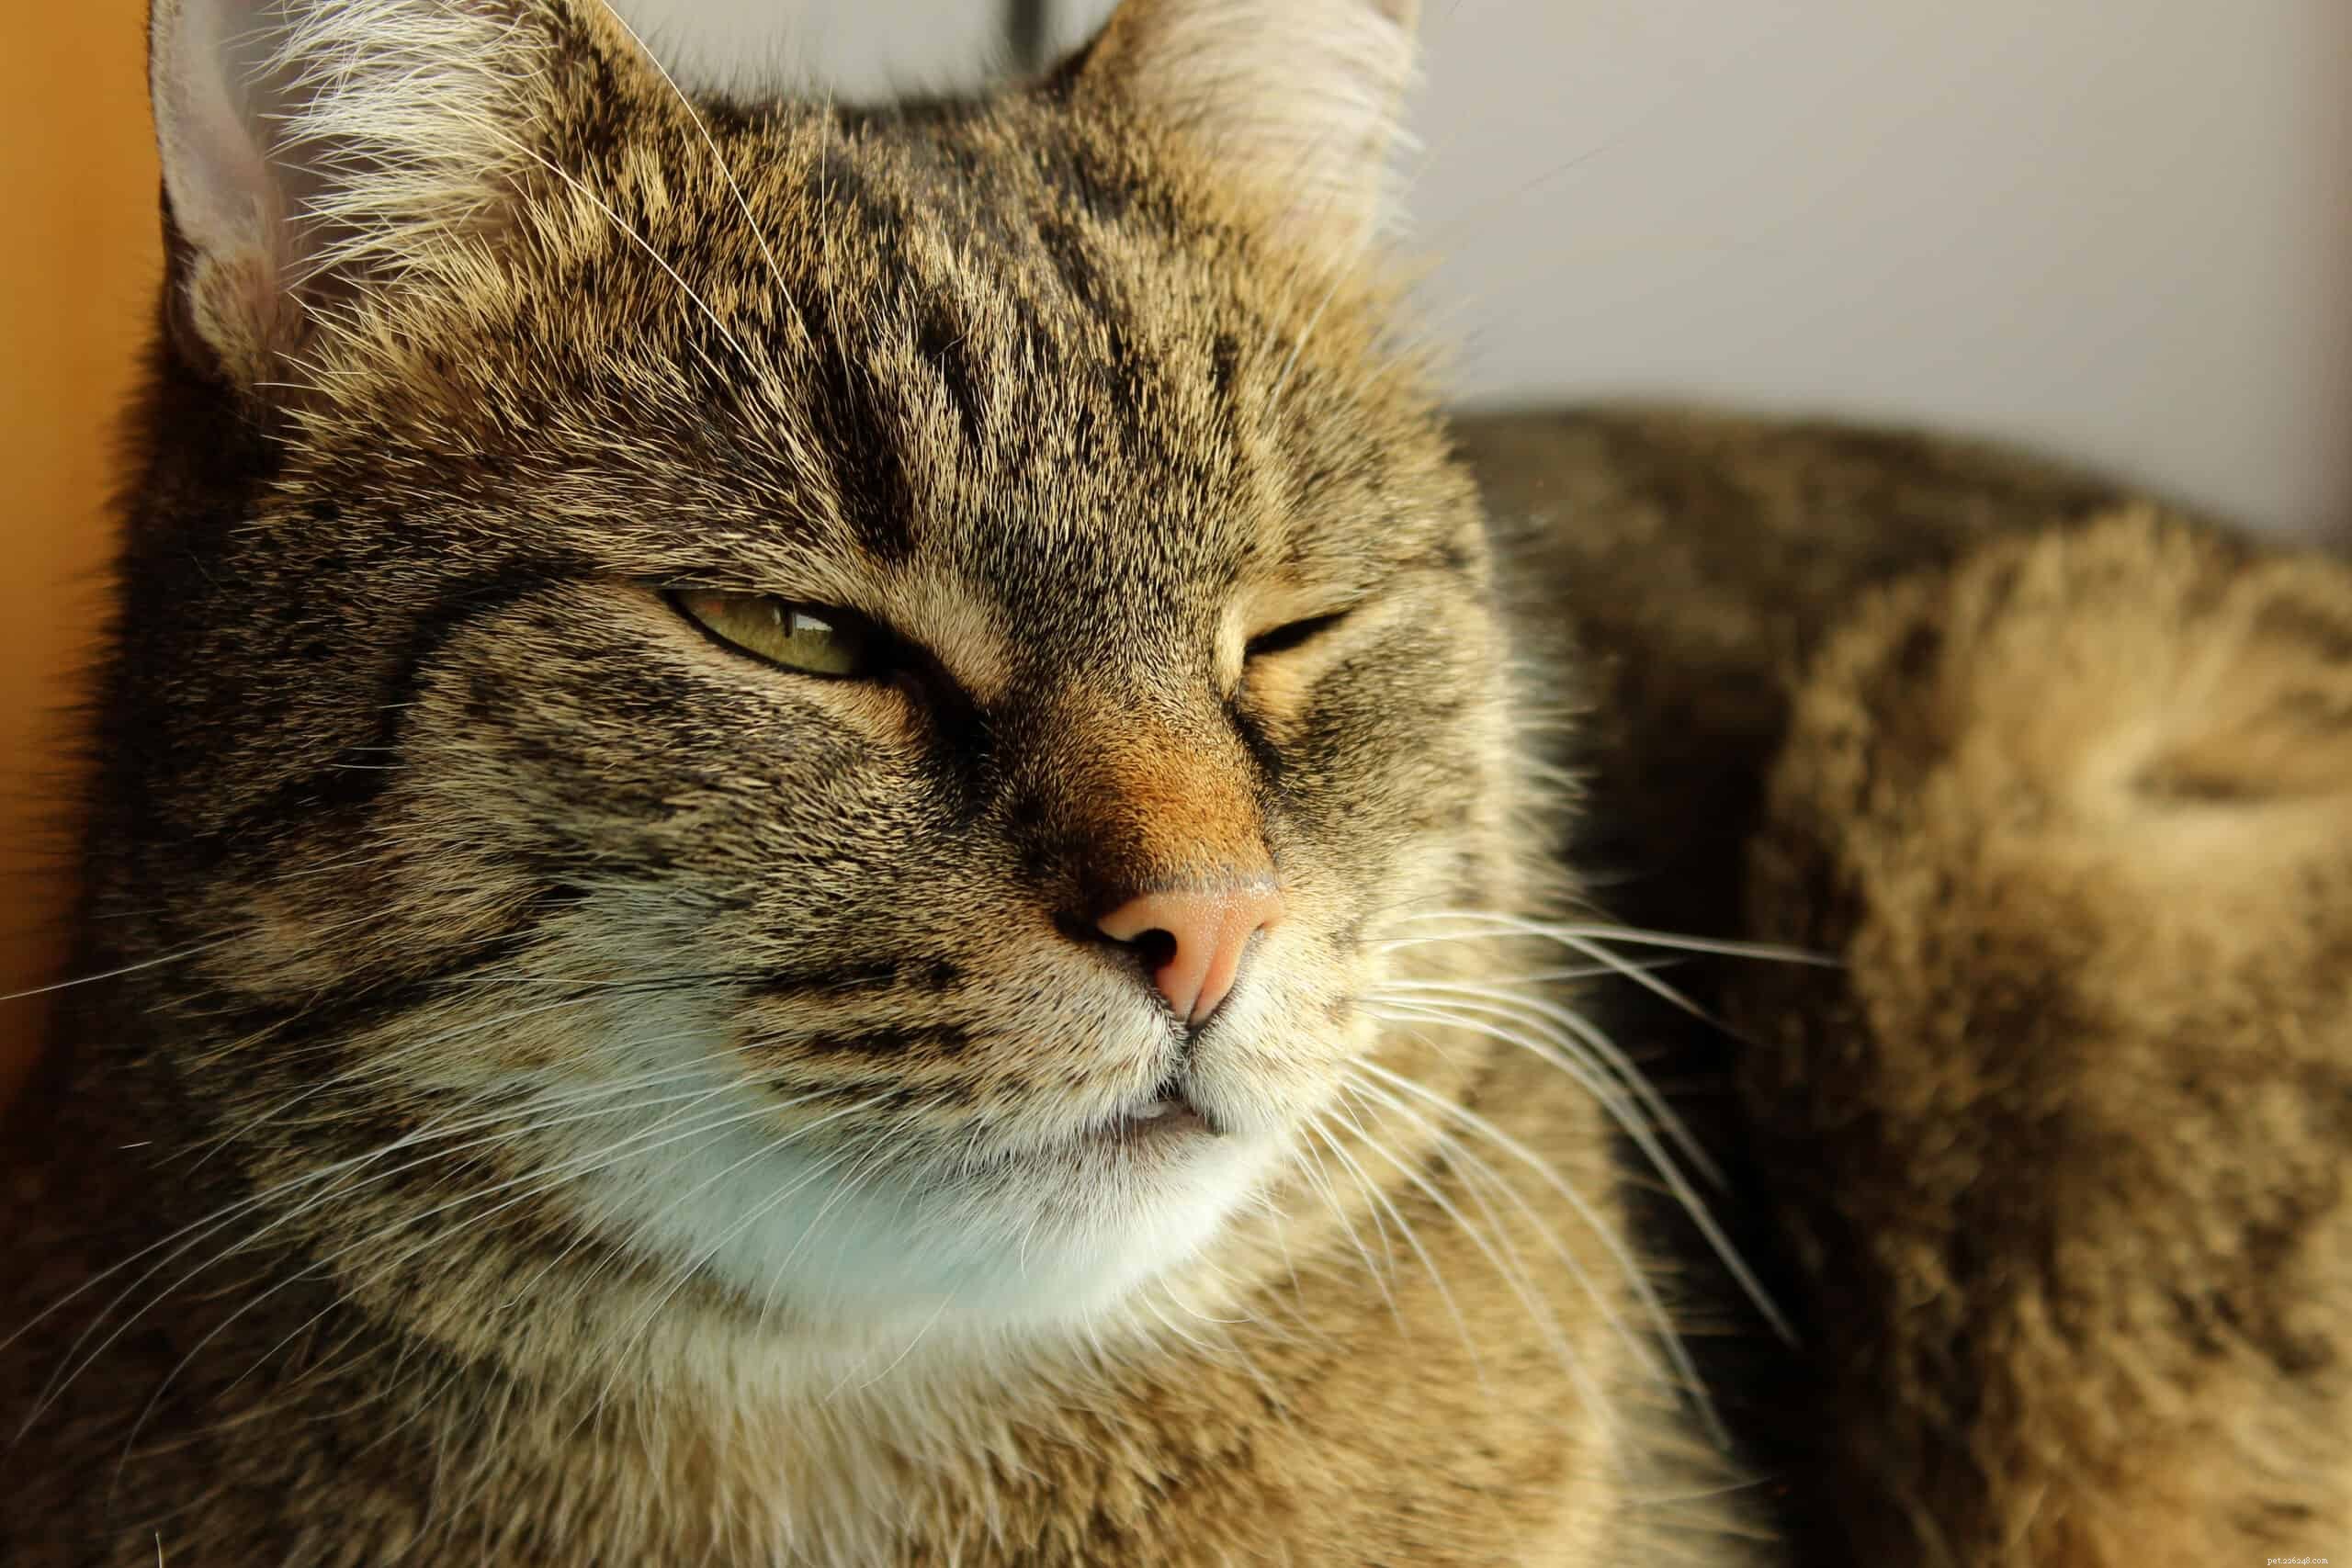 Perché i gatti non lampeggiano spesso?